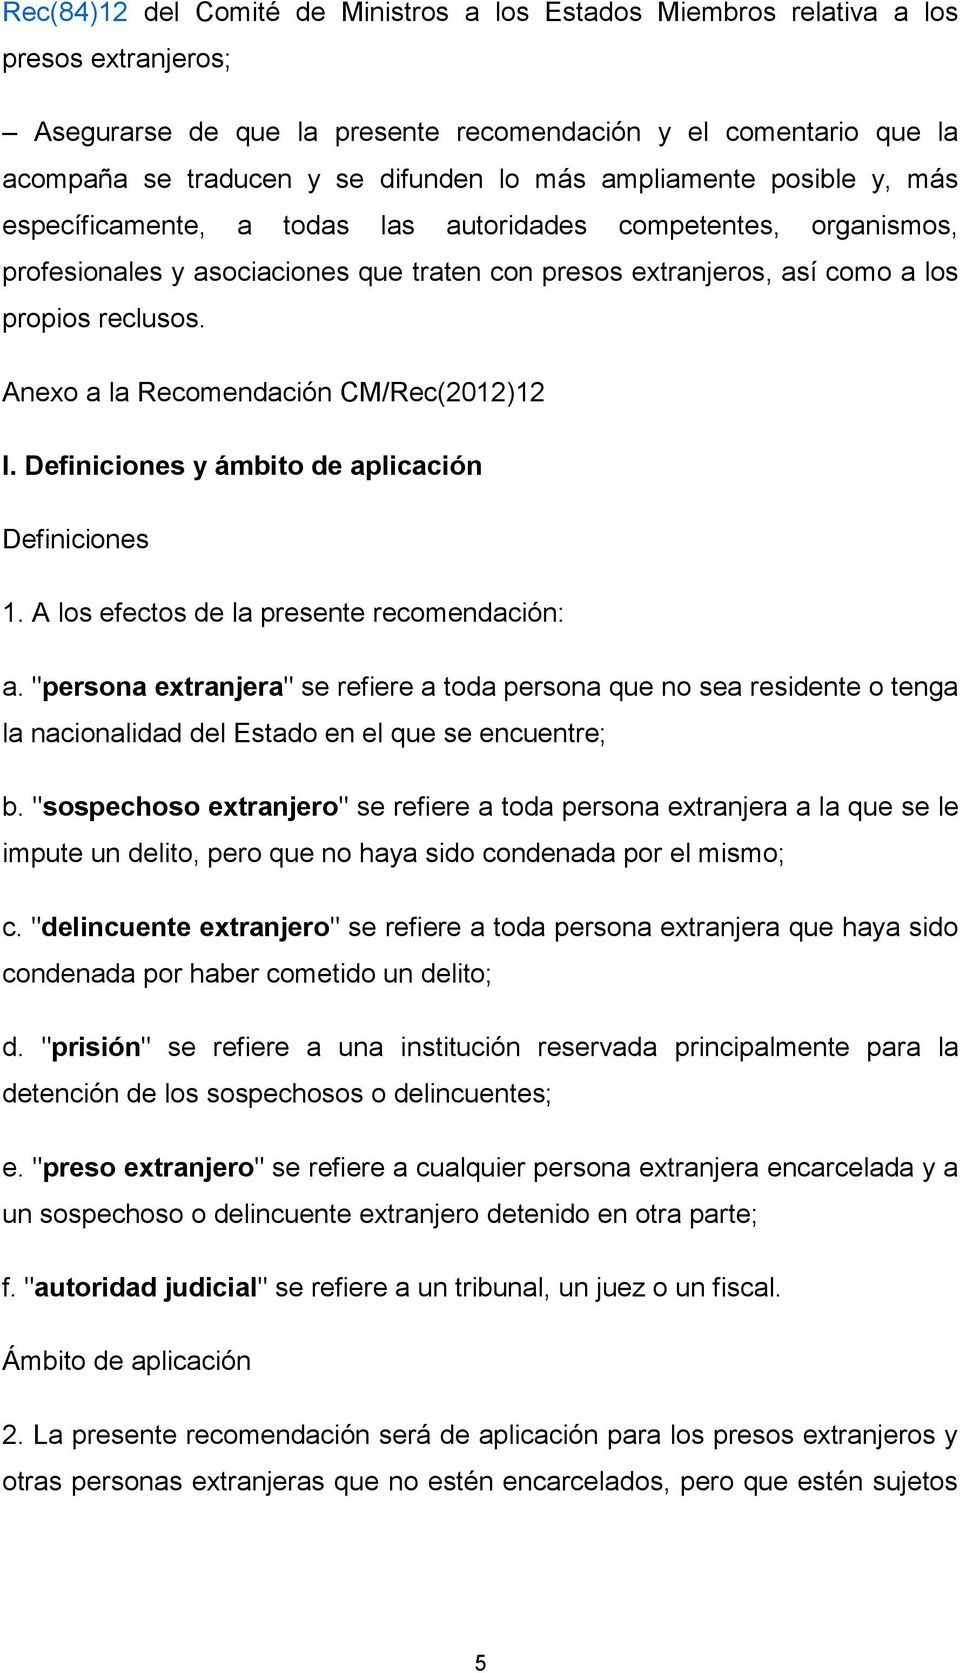 Anexo a la Recomendación CM/Rec(2012)12 I. Definiciones y ámbito de aplicación Definiciones 1. A los efectos de la presente recomendación: a.